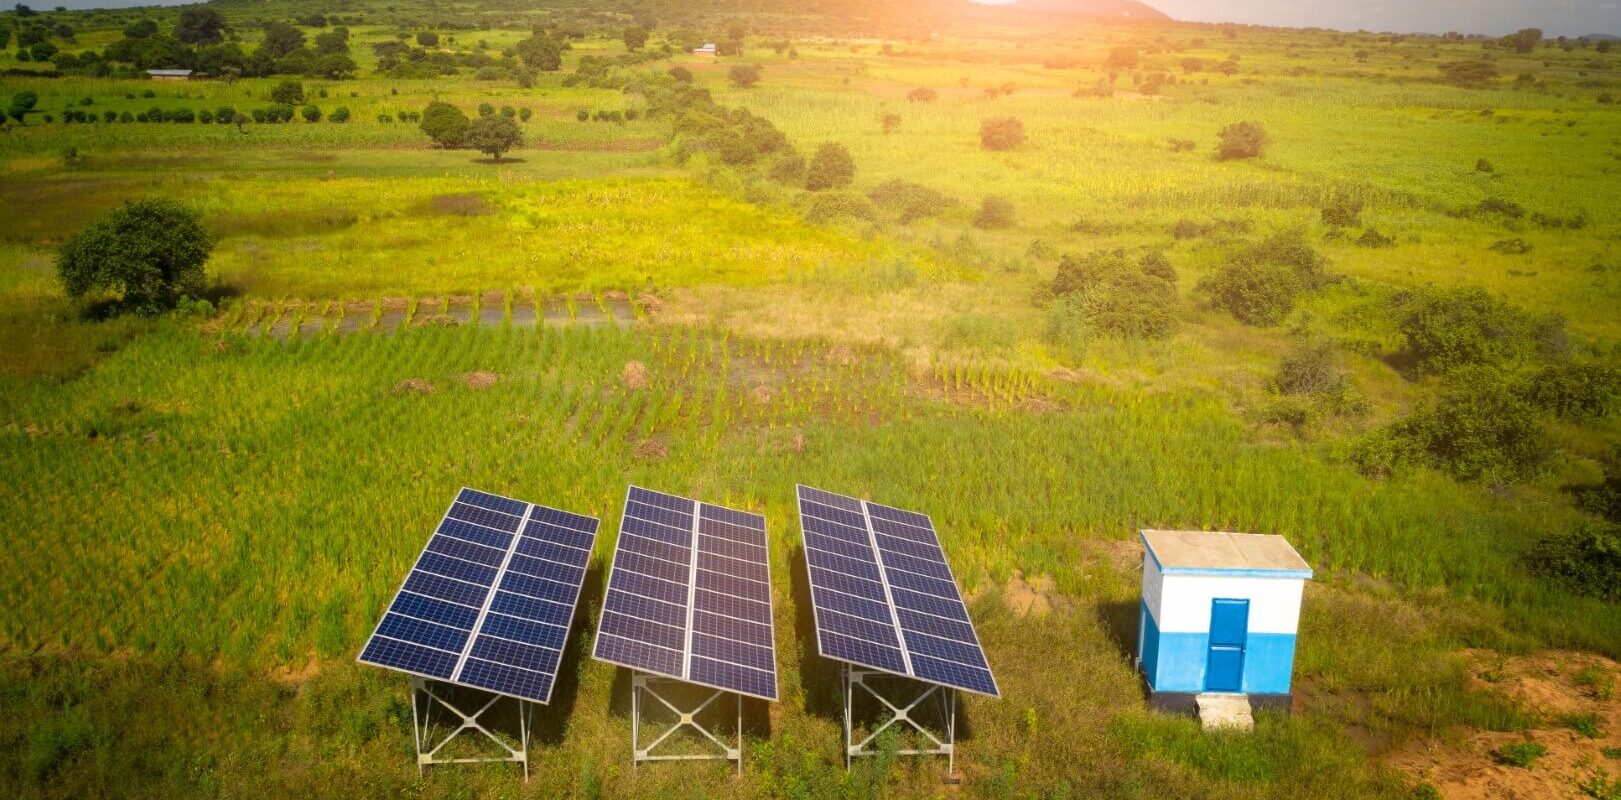 Projet Photovoltaique AUSAR ENERGY SAGEMCOM ENYS POWER